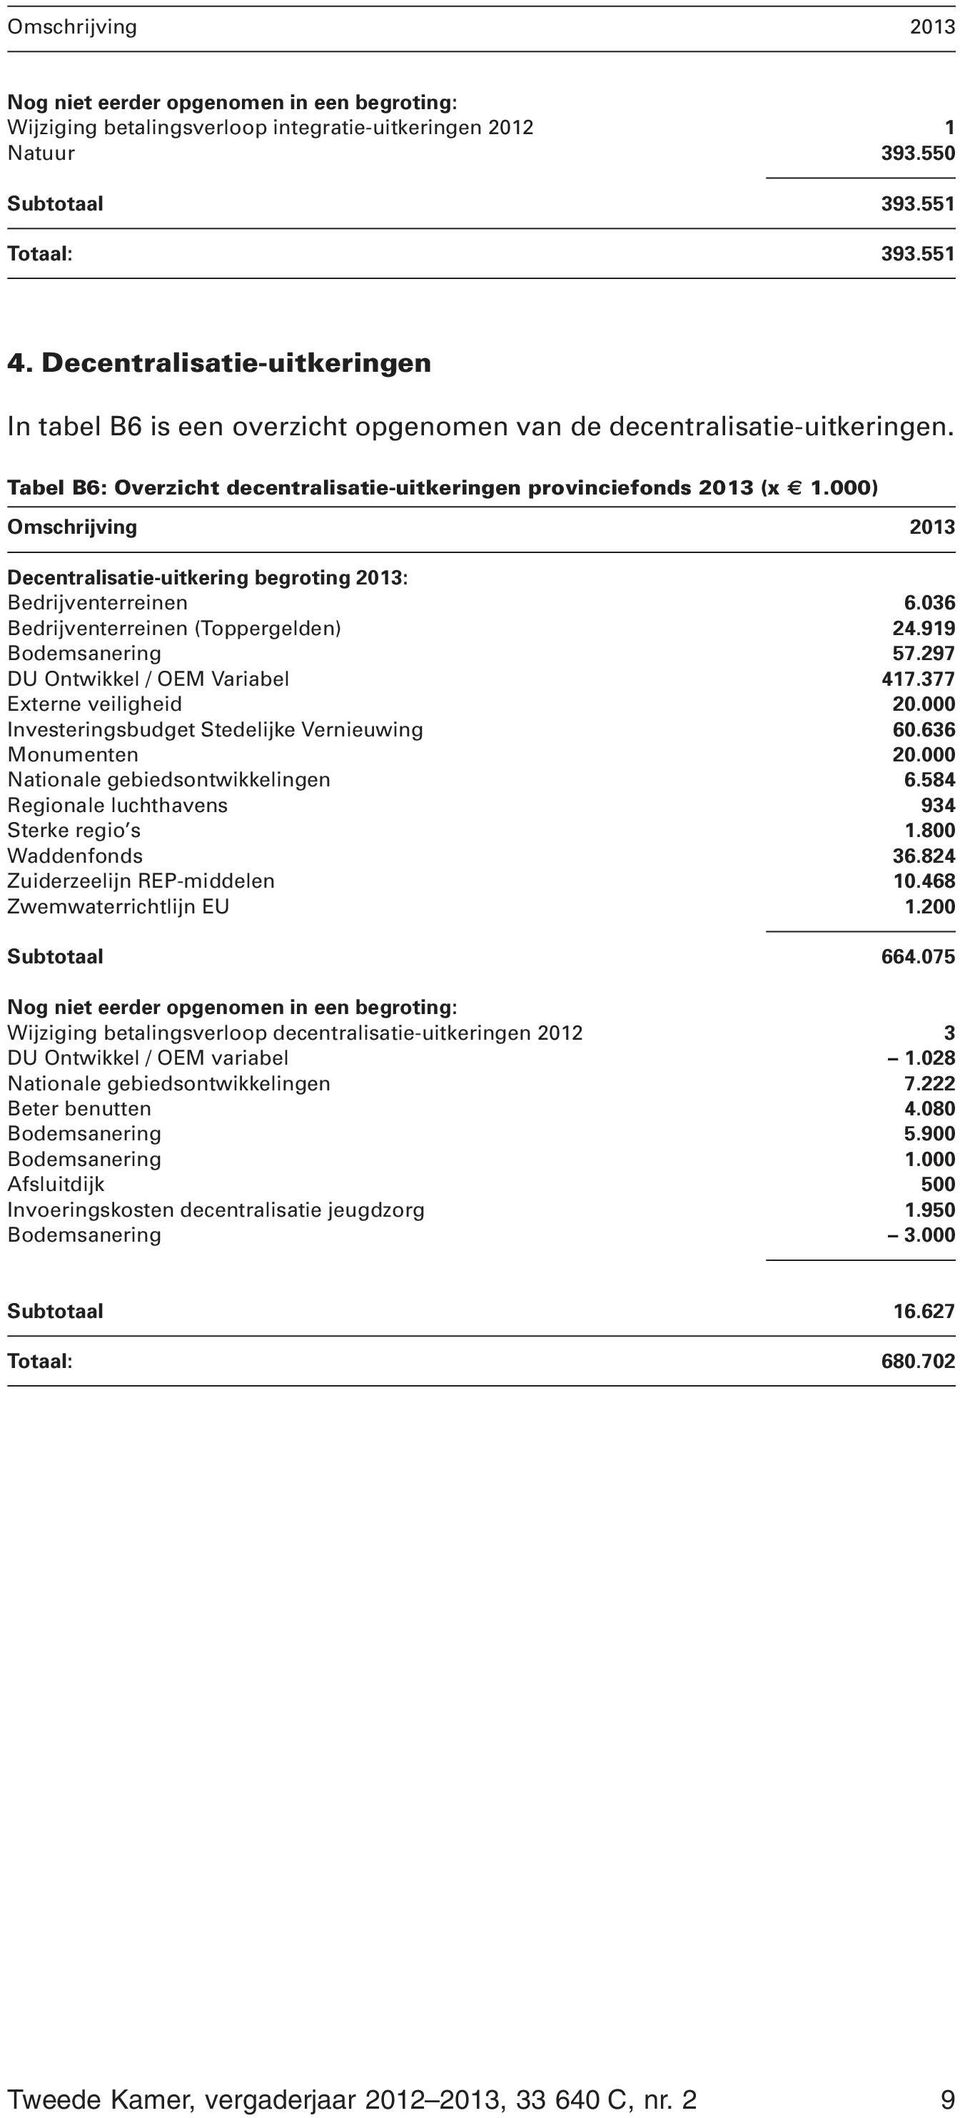 000) Omschrijving 2013 Decentralisatie-uitkering begroting 2013: Bedrijventerreinen 6.036 Bedrijventerreinen (Toppergelden) 24.919 Bodemsanering 57.297 DU Ontwikkel / OEM Variabel 417.